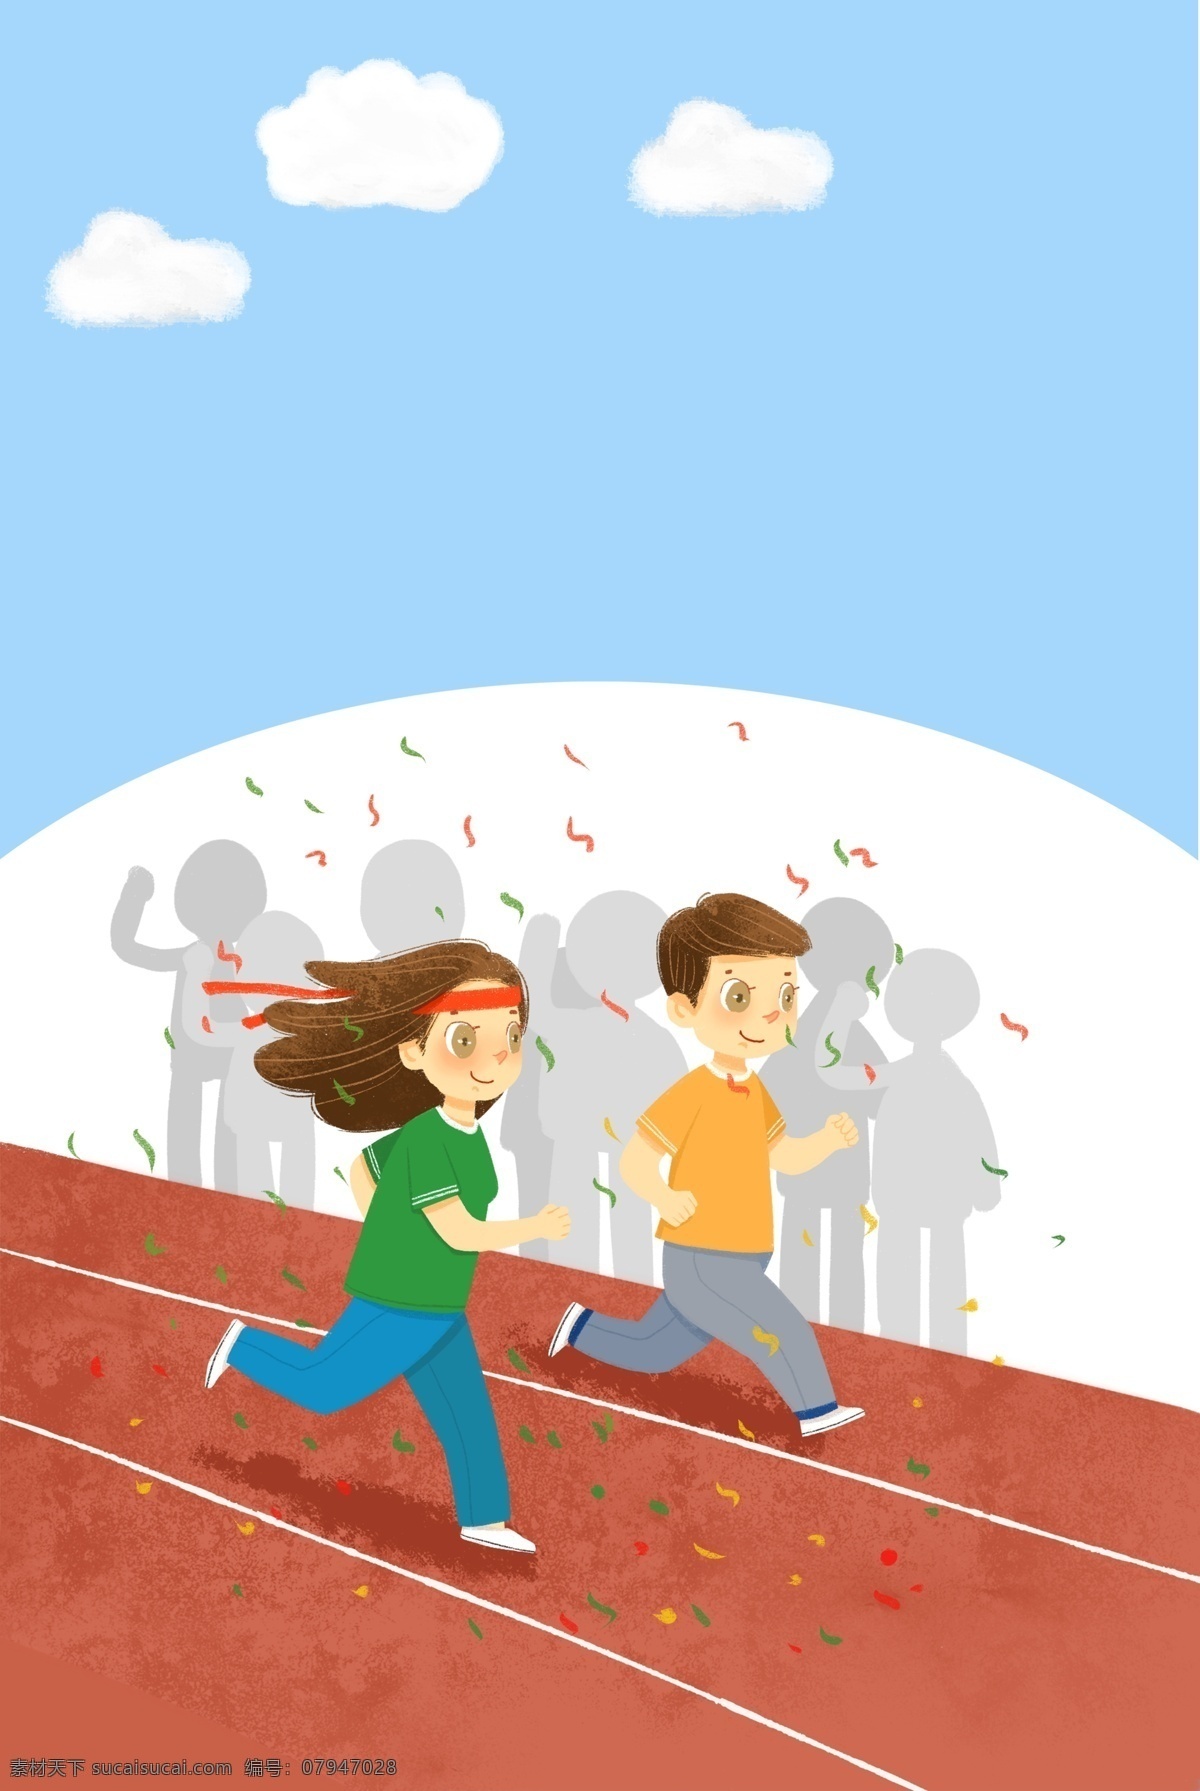 青春 活力 跑步 运动 背景 田径 跑道 体育精神 快乐 健康 冲刺